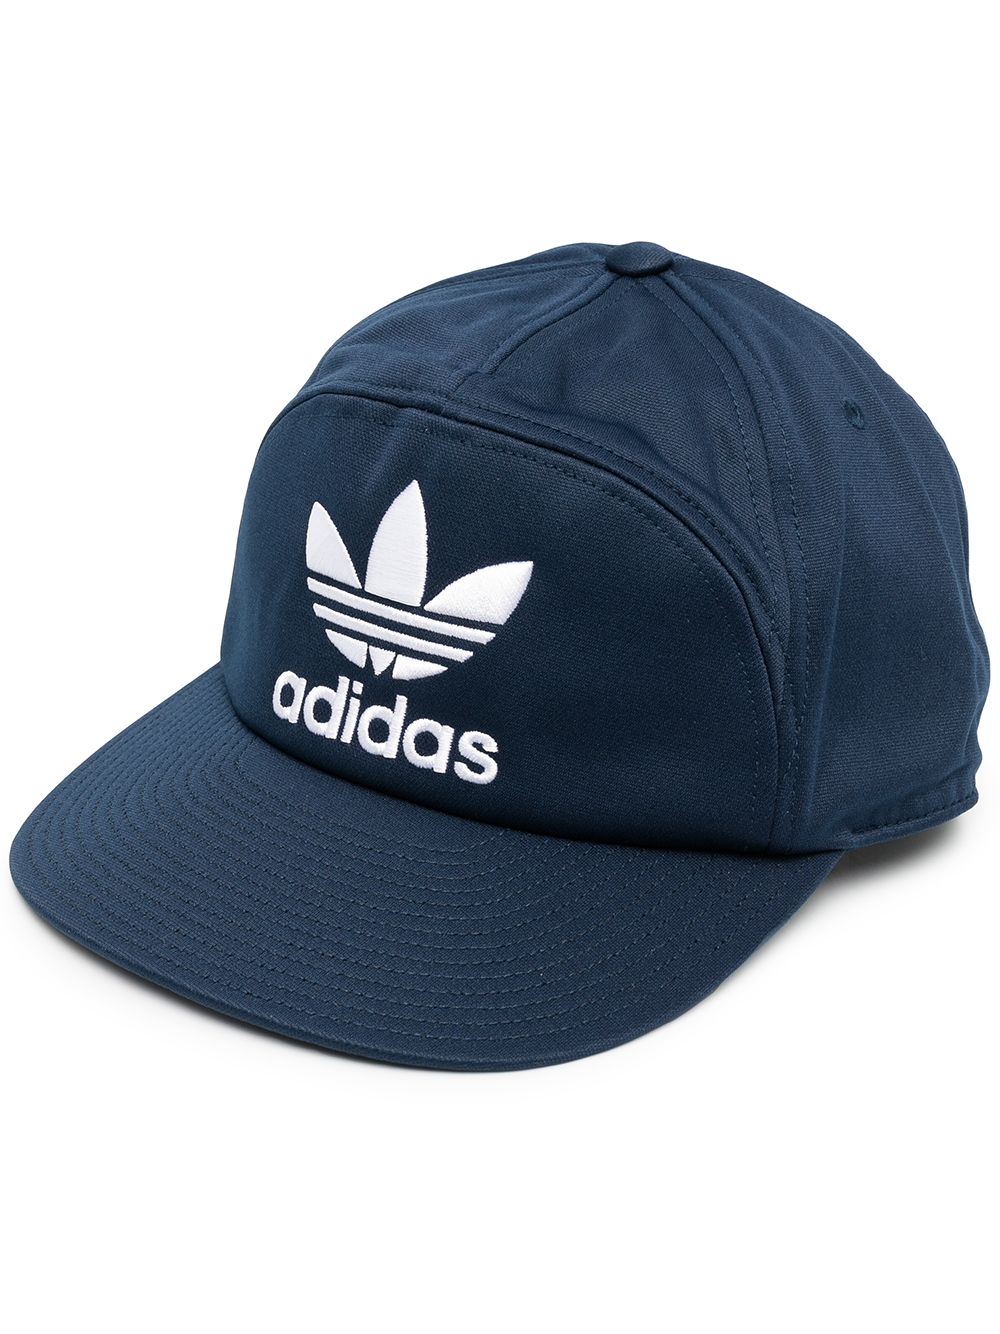 фото Adidas бейсболка с вышитым логотипом